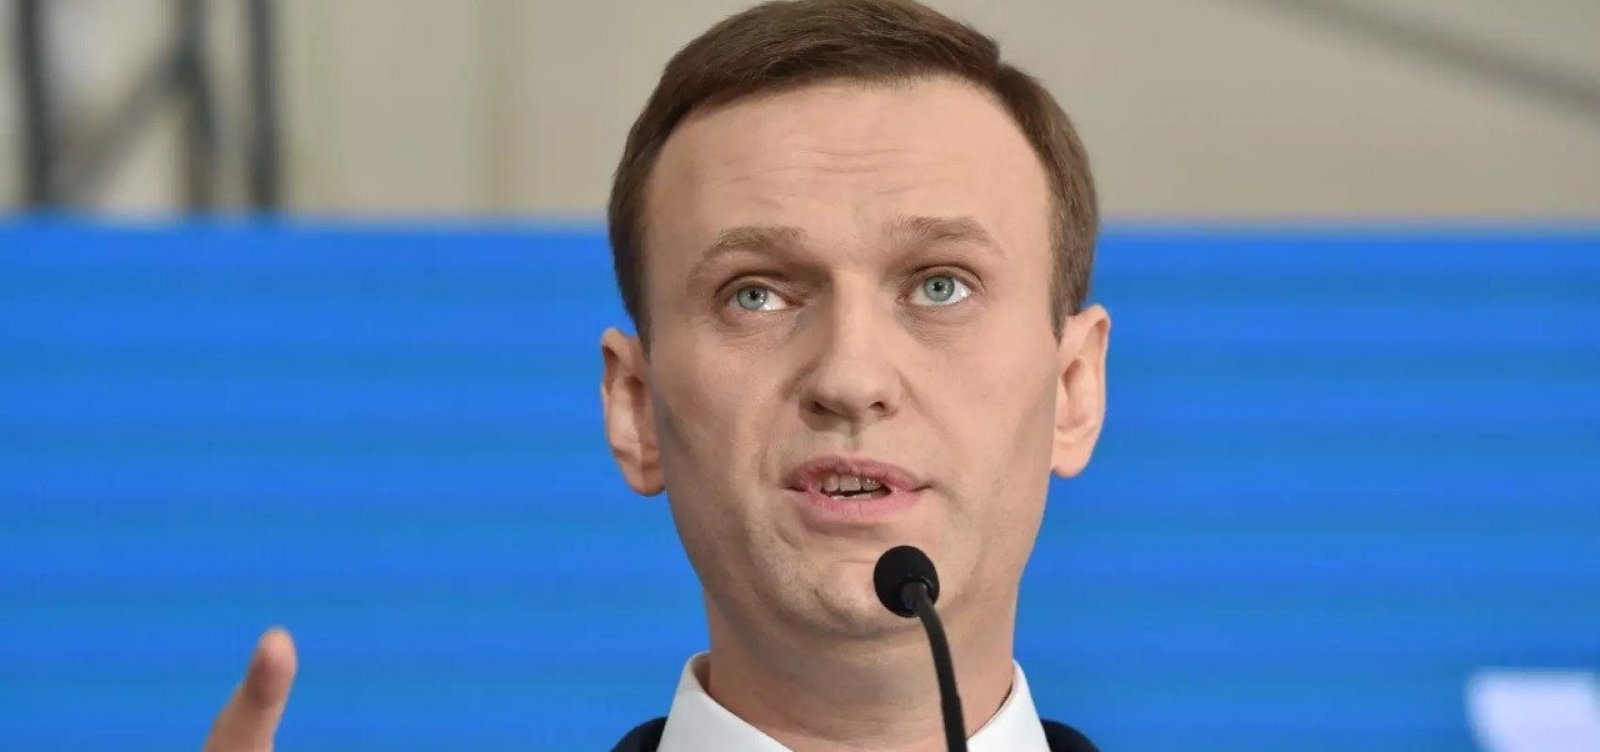 Corpo de Alexei Navalny foi entregue à mãe, diz porta-voz